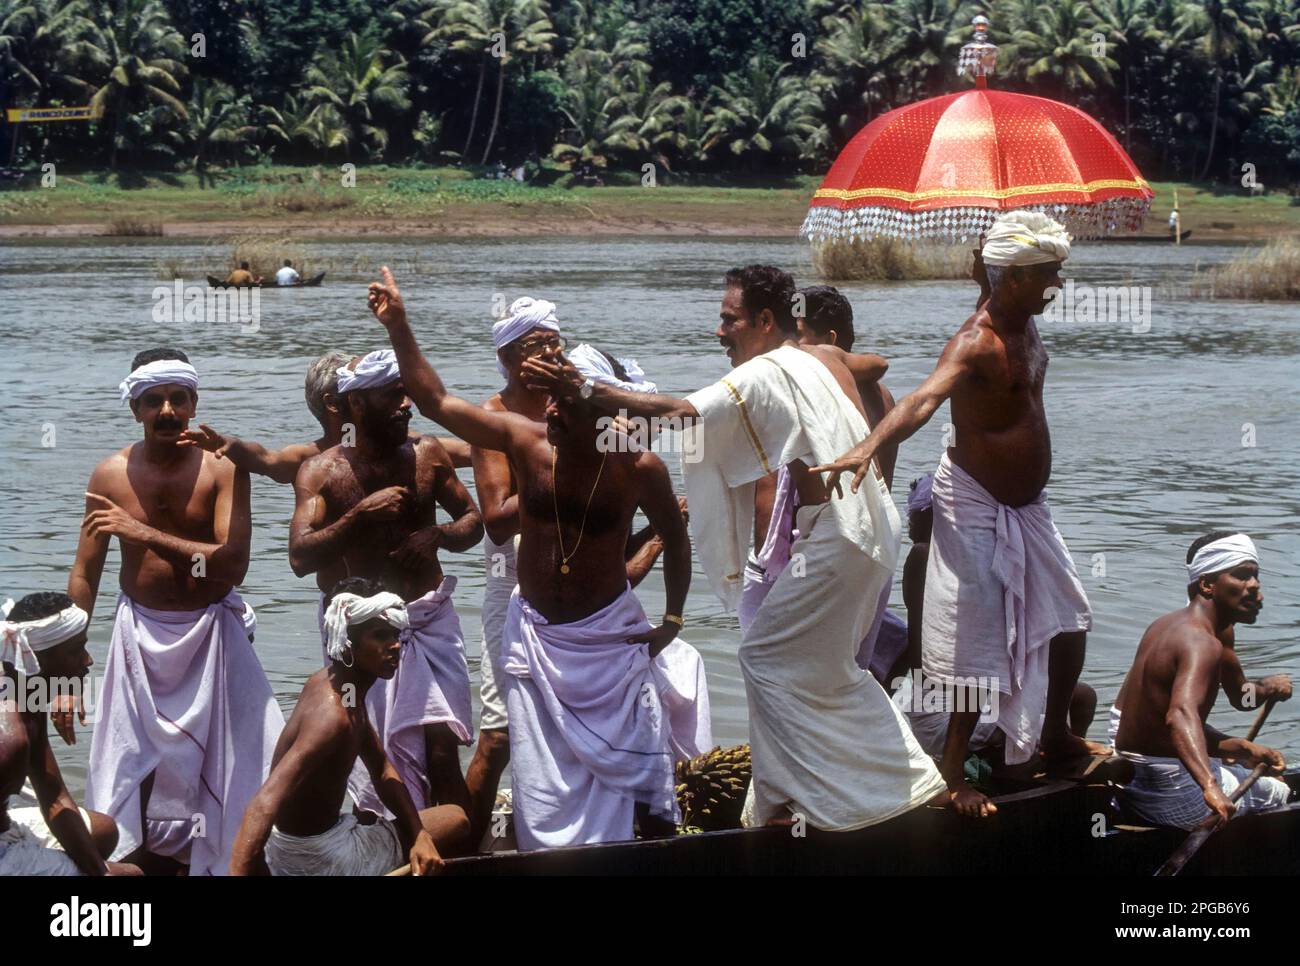 Vanji pattu Singers dans le festival Aranmula Vallamkali ou Snake Boat Race, tenu sur la rivière Pampa pendant le festival Onam à Aranmula, Kerala, Inde, Asie Banque D'Images